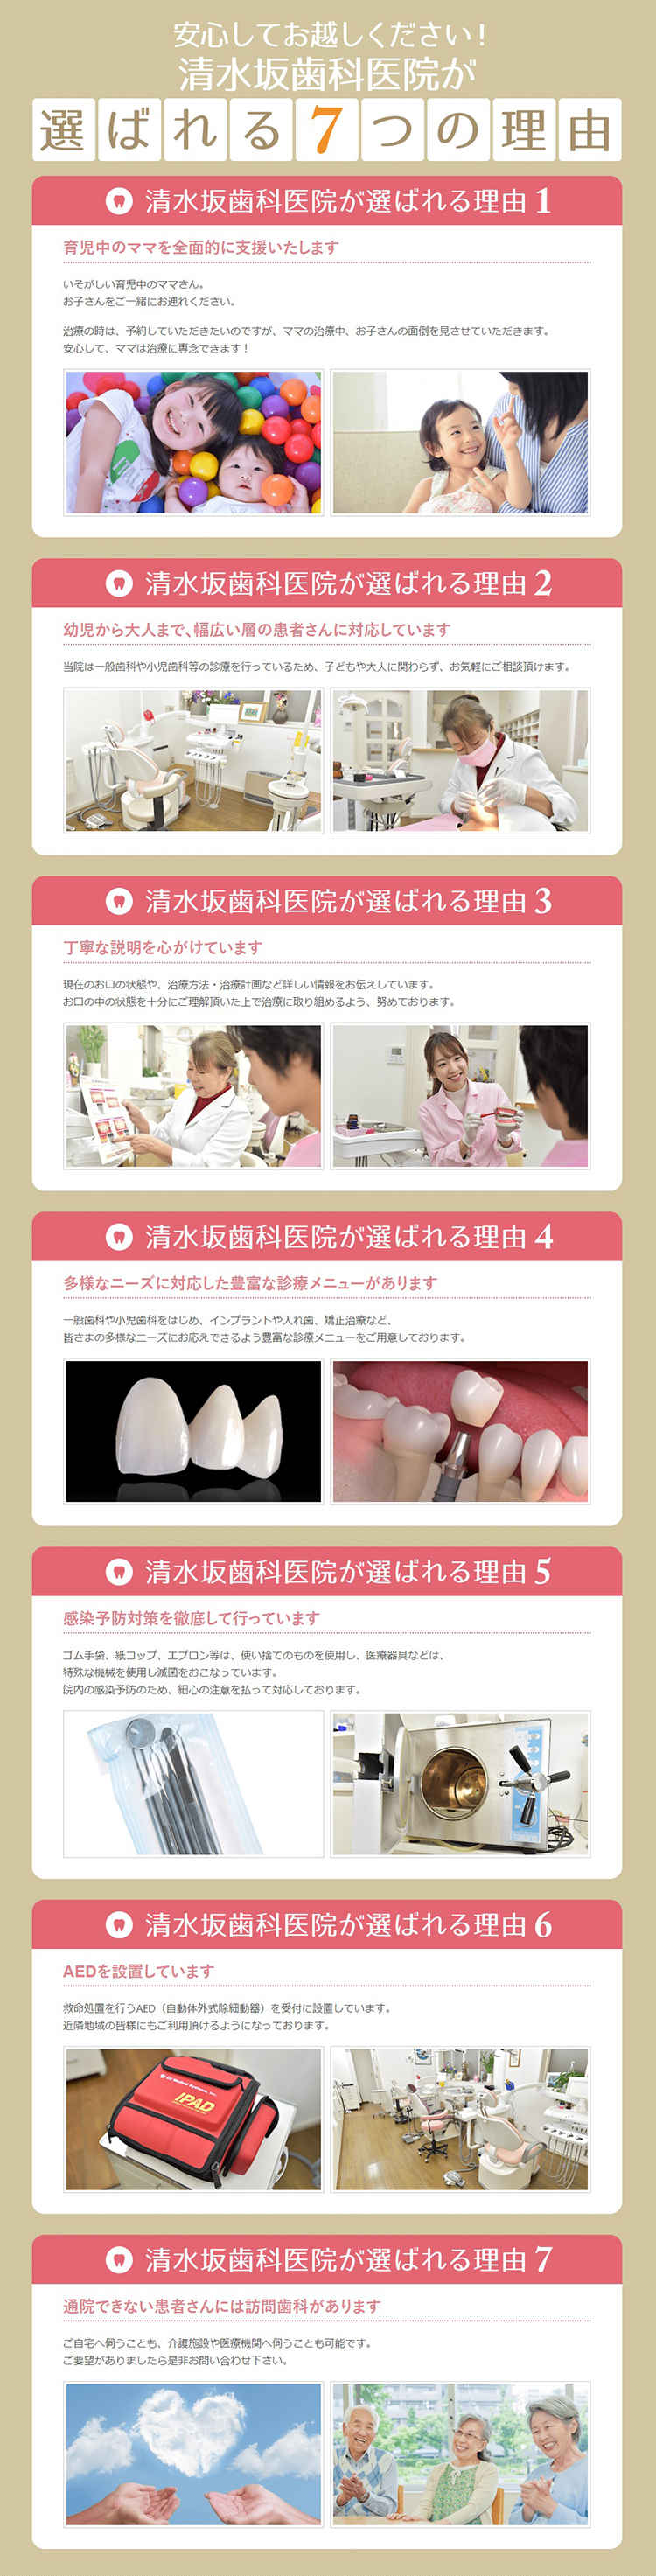 清水坂歯科医院のお知らせ内容